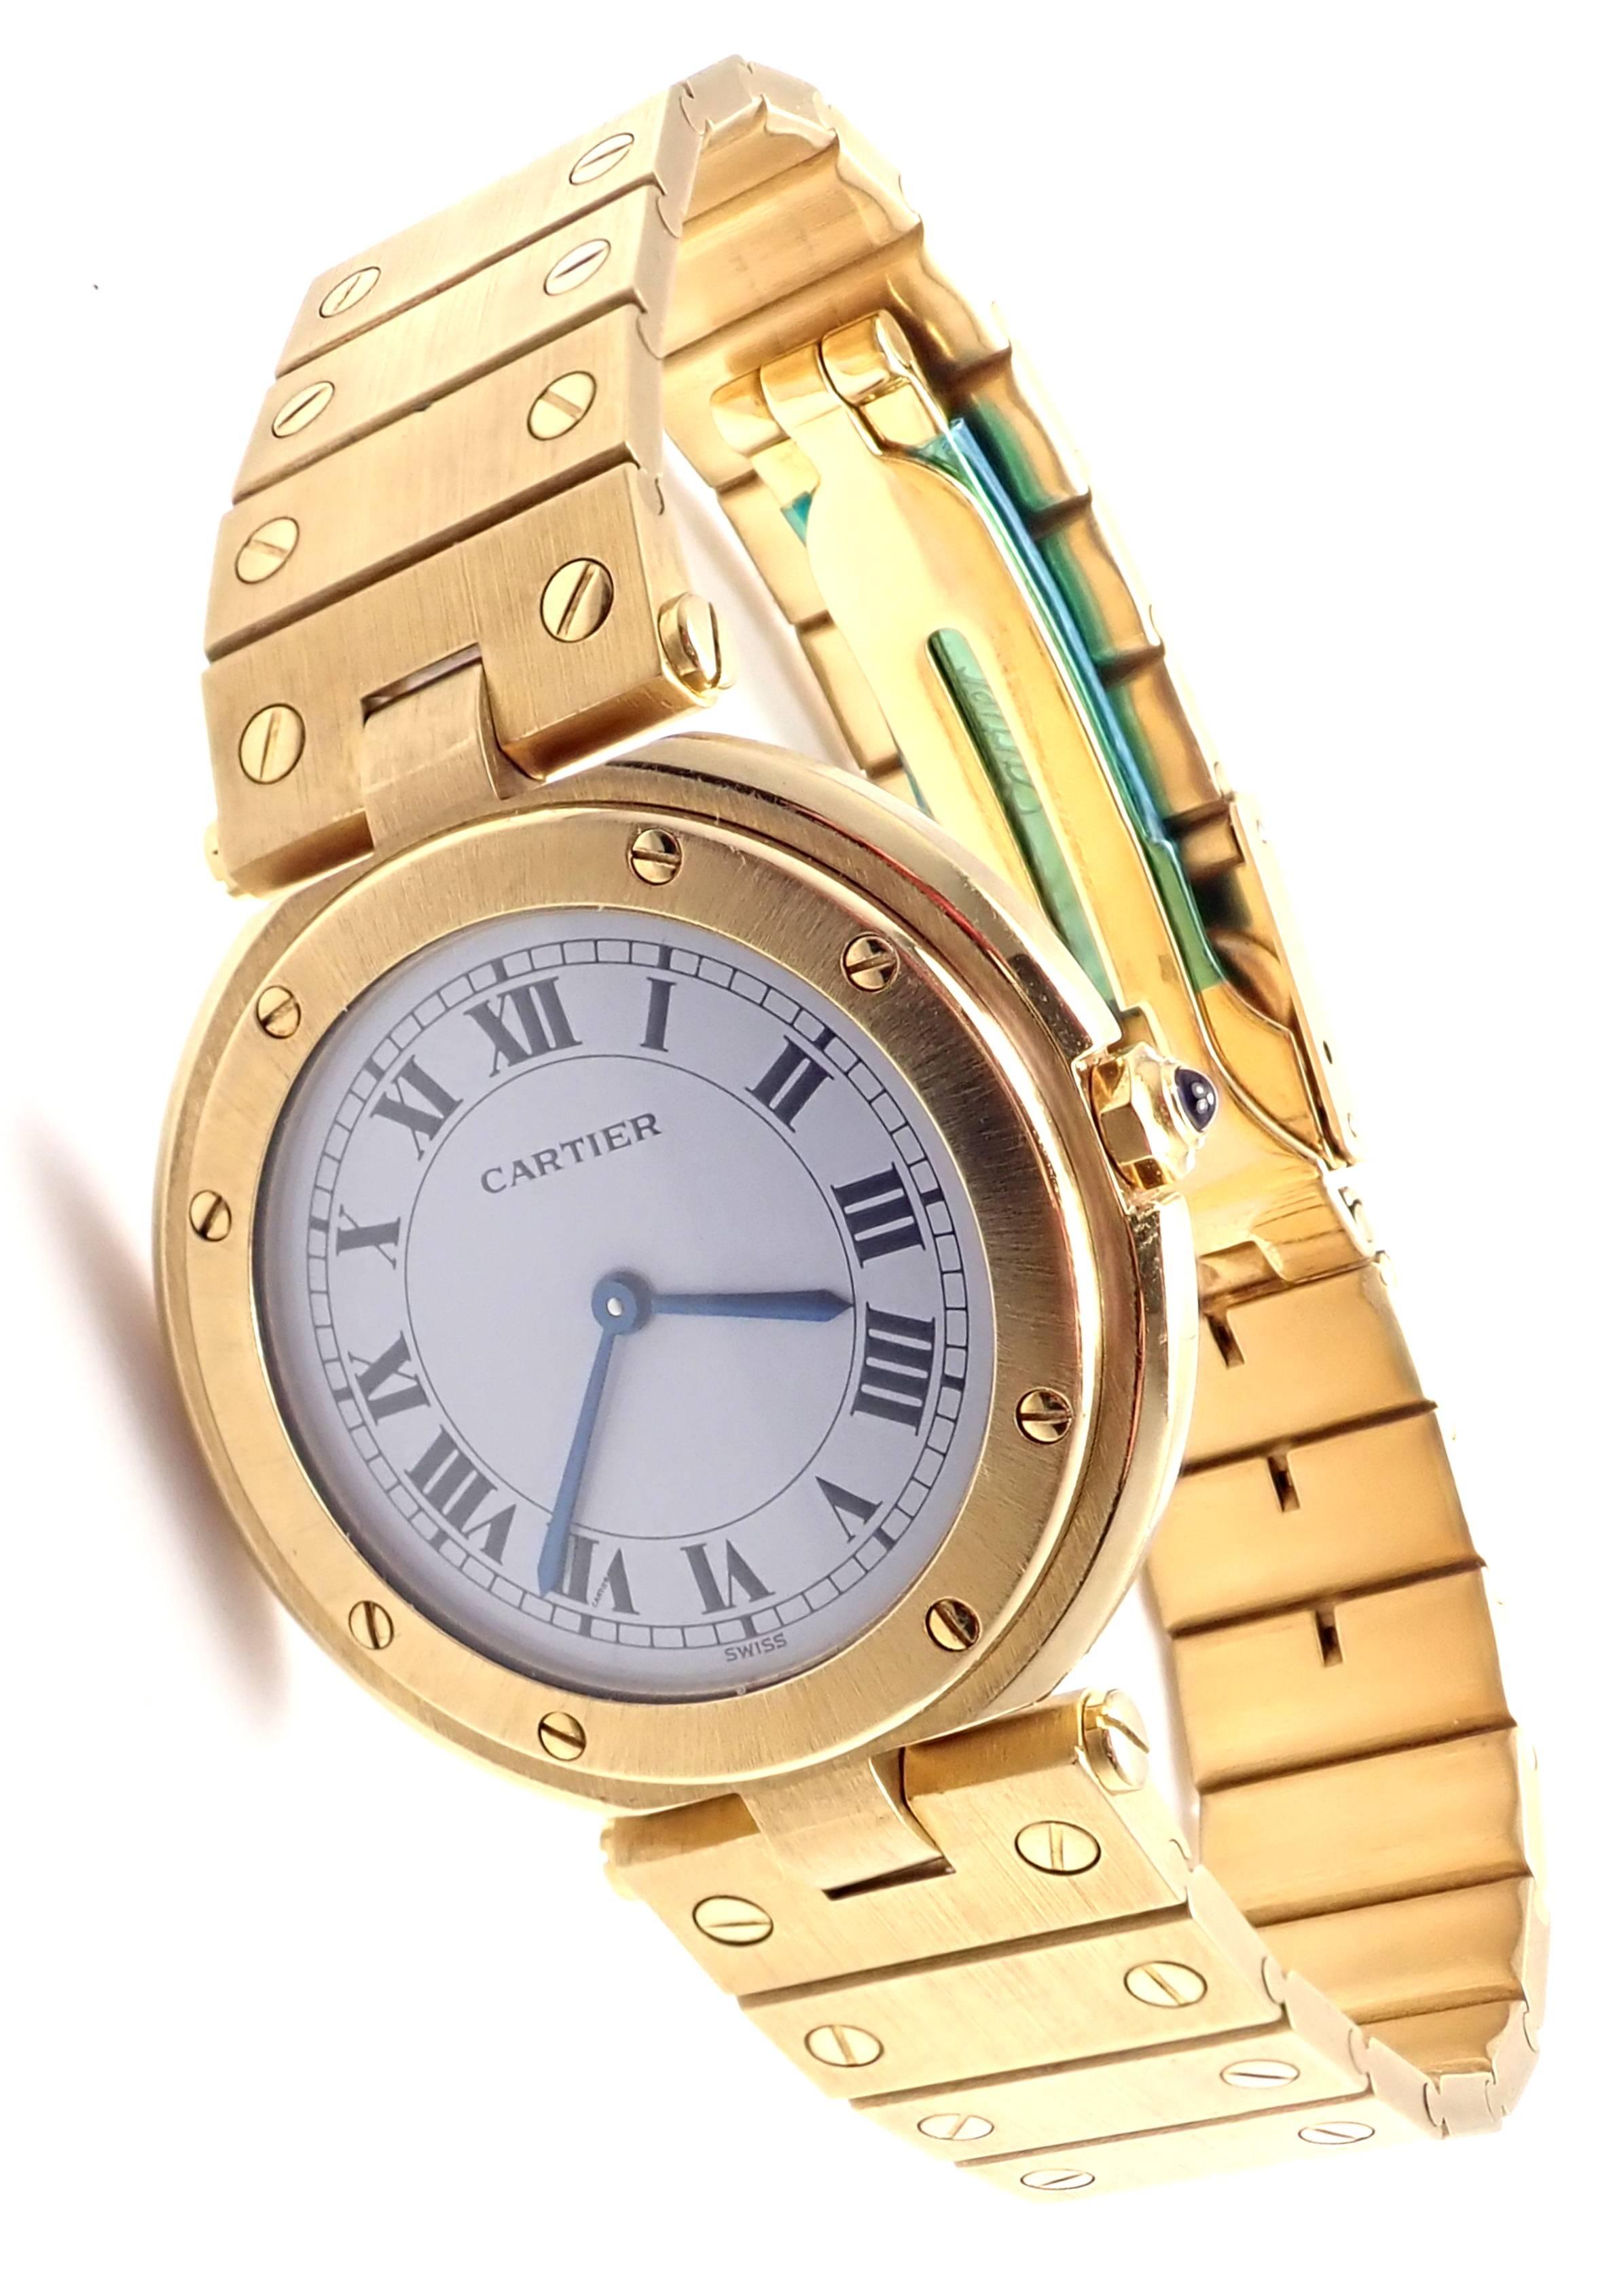 18k yellow gold Santos De Cartier Unisex Quartz Watch. 
Details: 
Case Dimensions: 32mm
Watch Length: 7.5